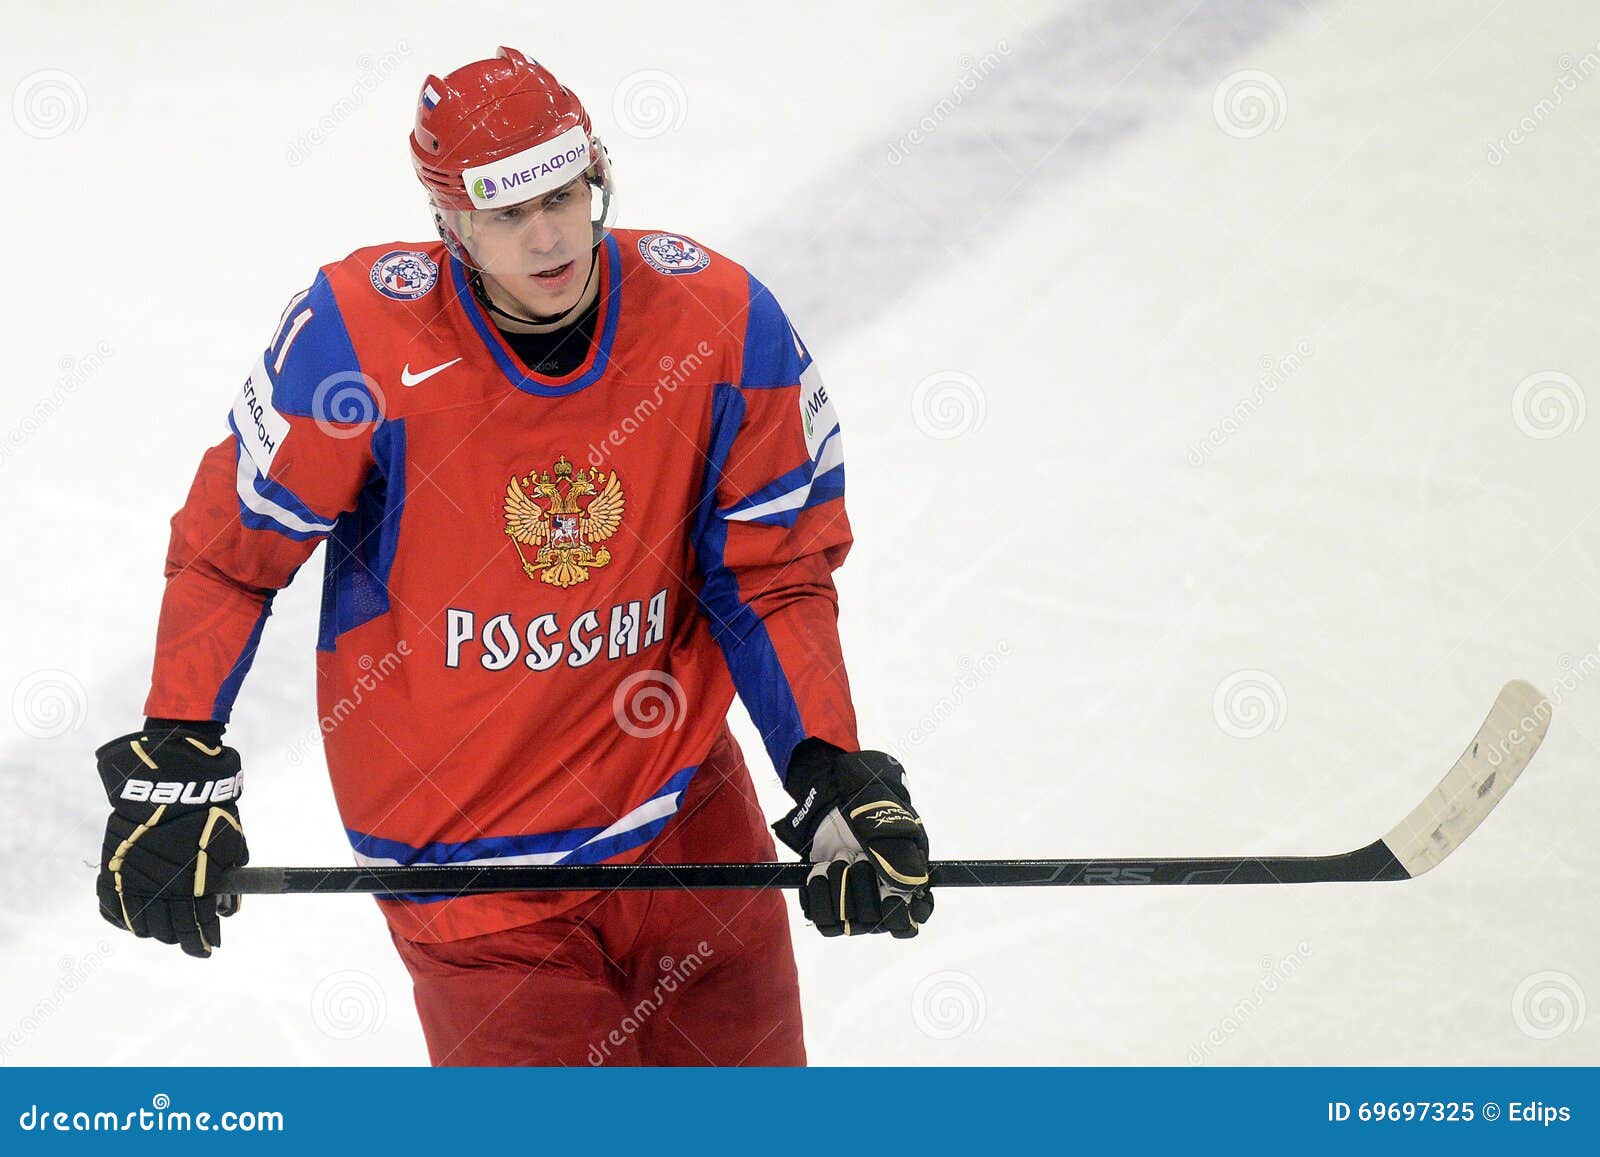 Malkin Russia Ice Hockey Jersey